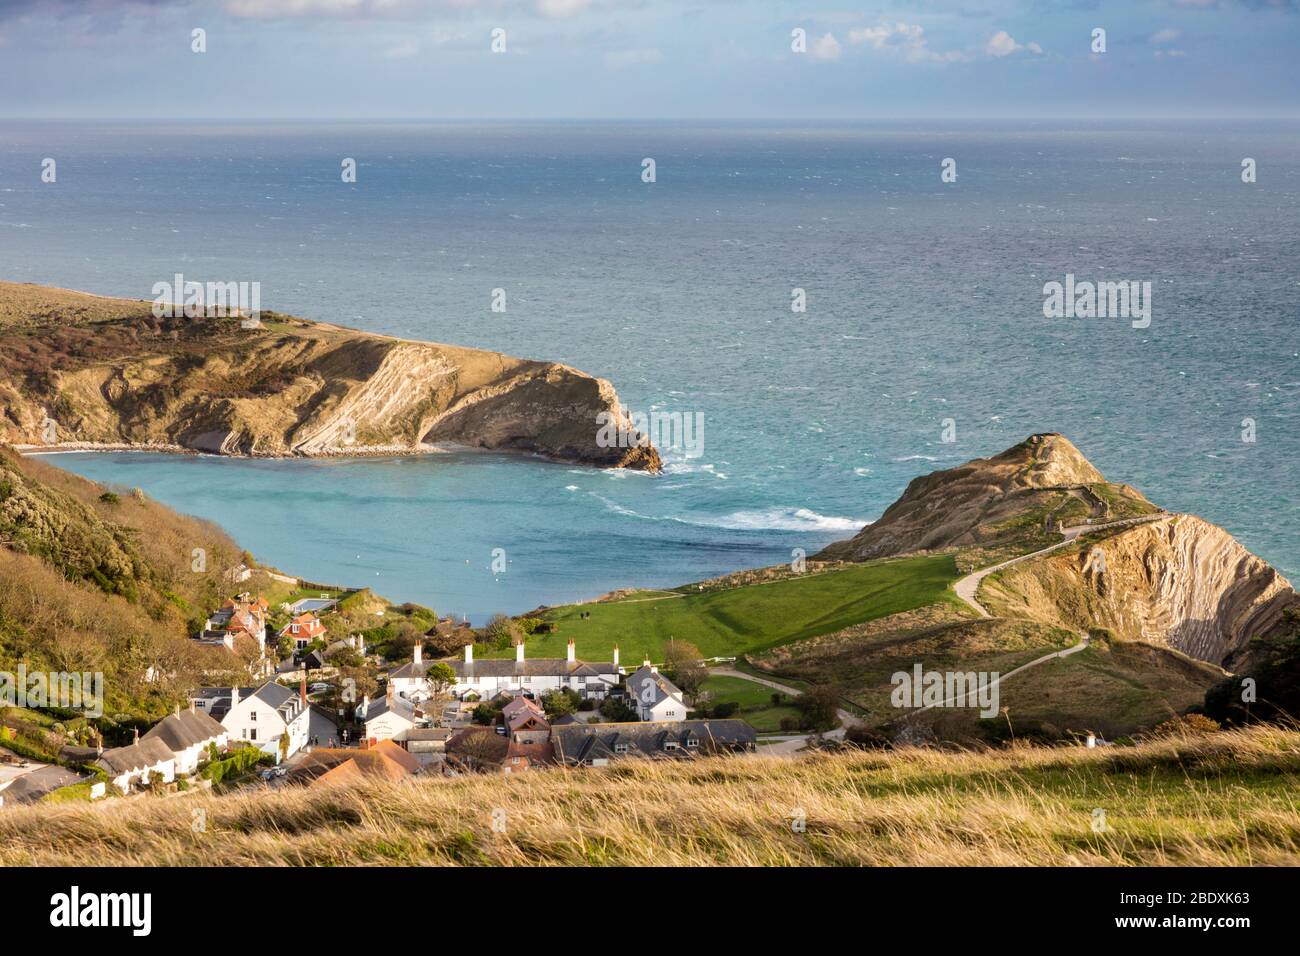 Lulworth Cove and village of West Lulworth along the Jurassic Coast, Dorset, England, UK Stock Photo